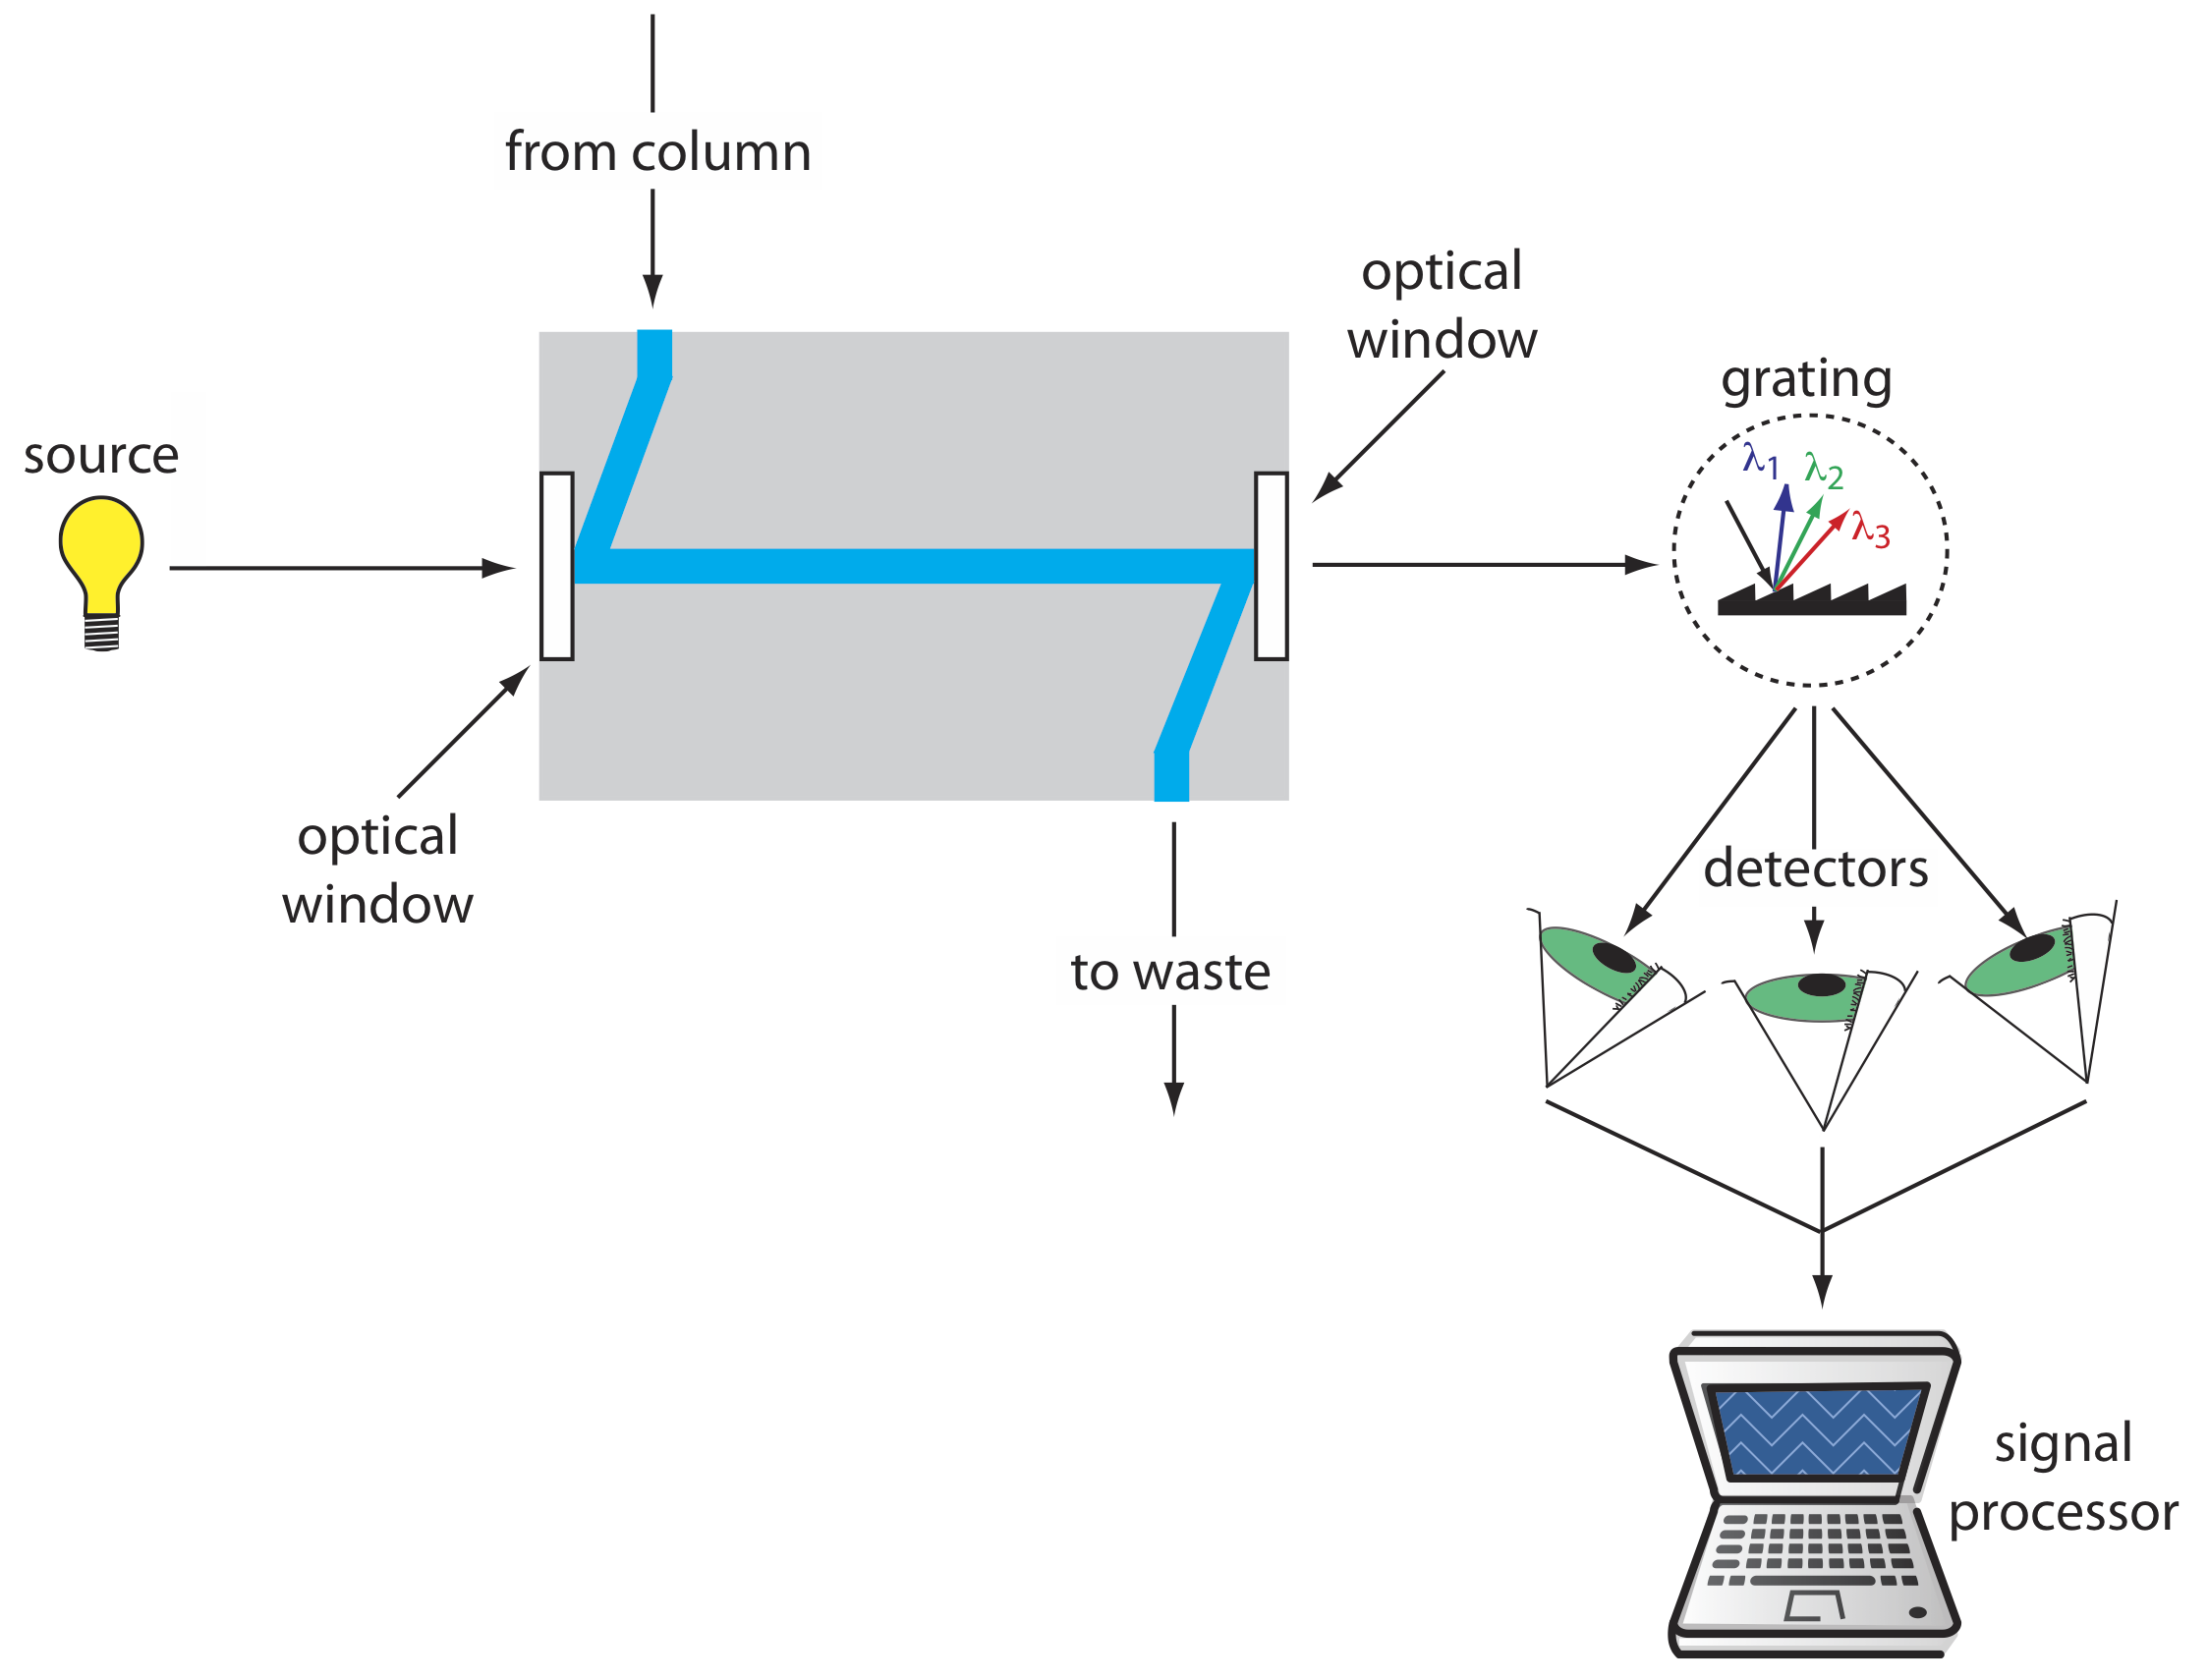 El esquema muestra la luz proveniente de una fuente a través de una ventana óptica mientras hay flujo de la columna a los desechos. La luz luego sale a través de otra ventana óptica y golpea la rejilla que envía diferentes longitudes de onda a los detectores y luego a un procesador de señal.